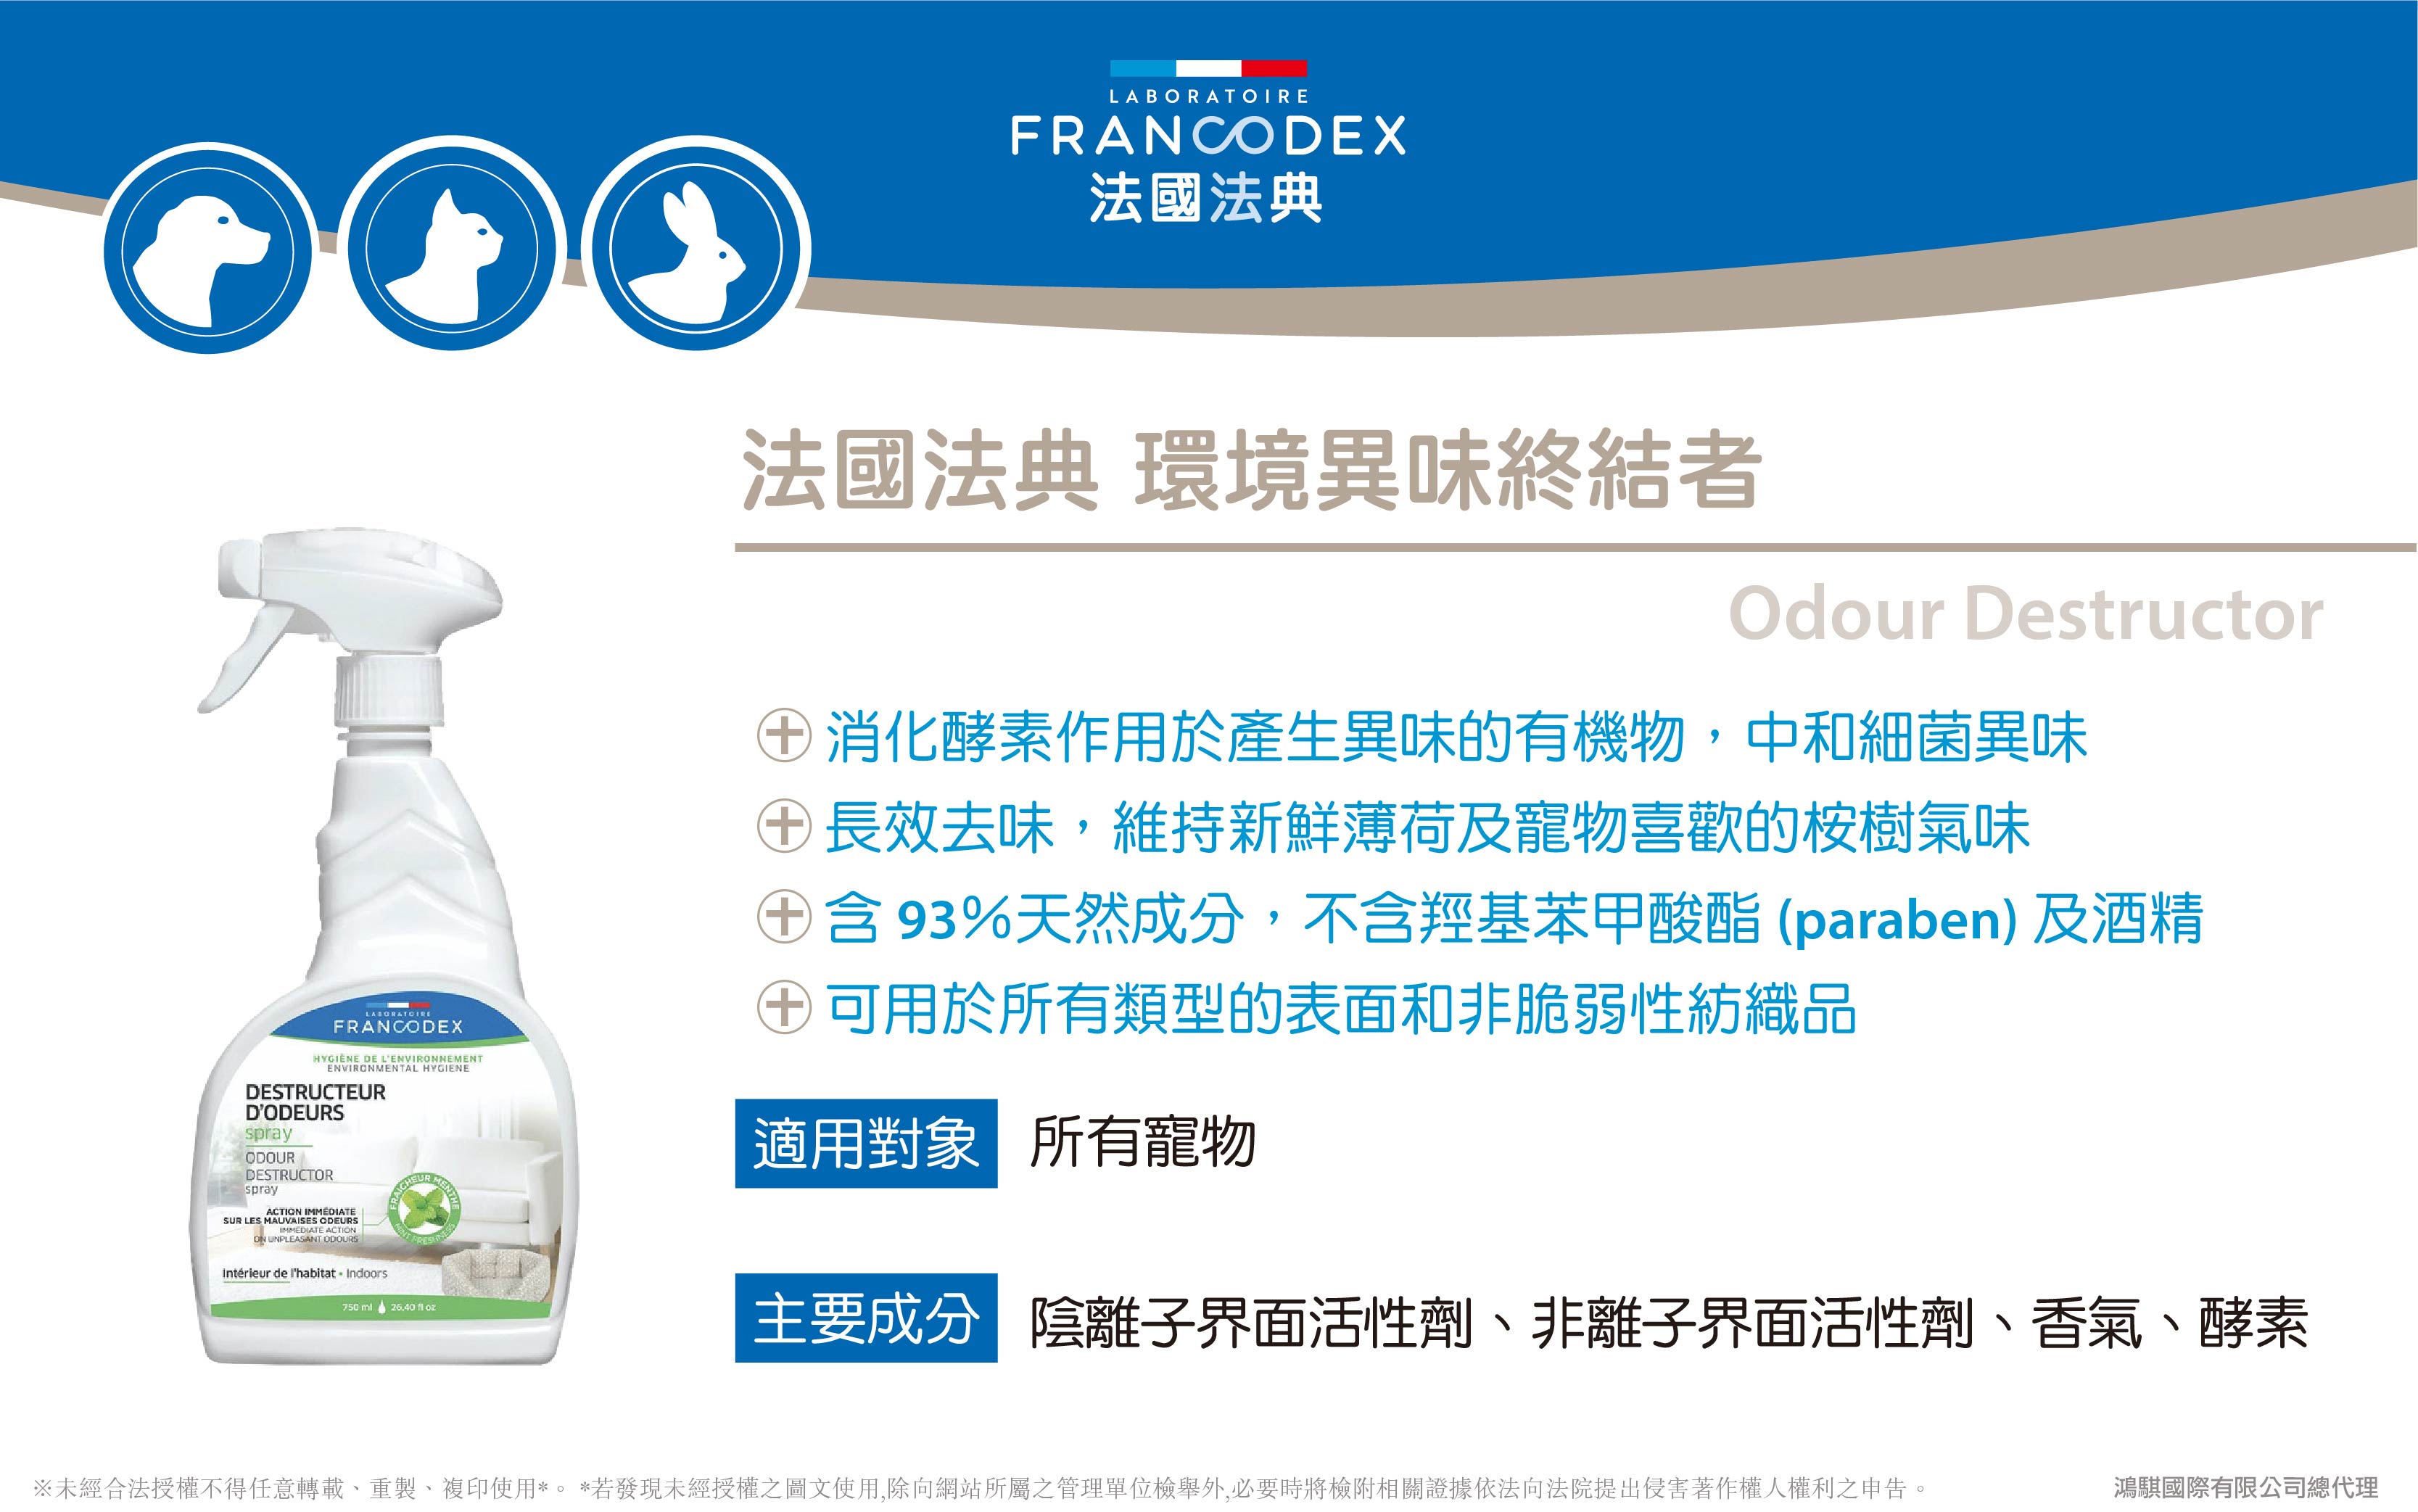 【Francodex】官網-產品介紹_33法國法典環境異味終結者(1)